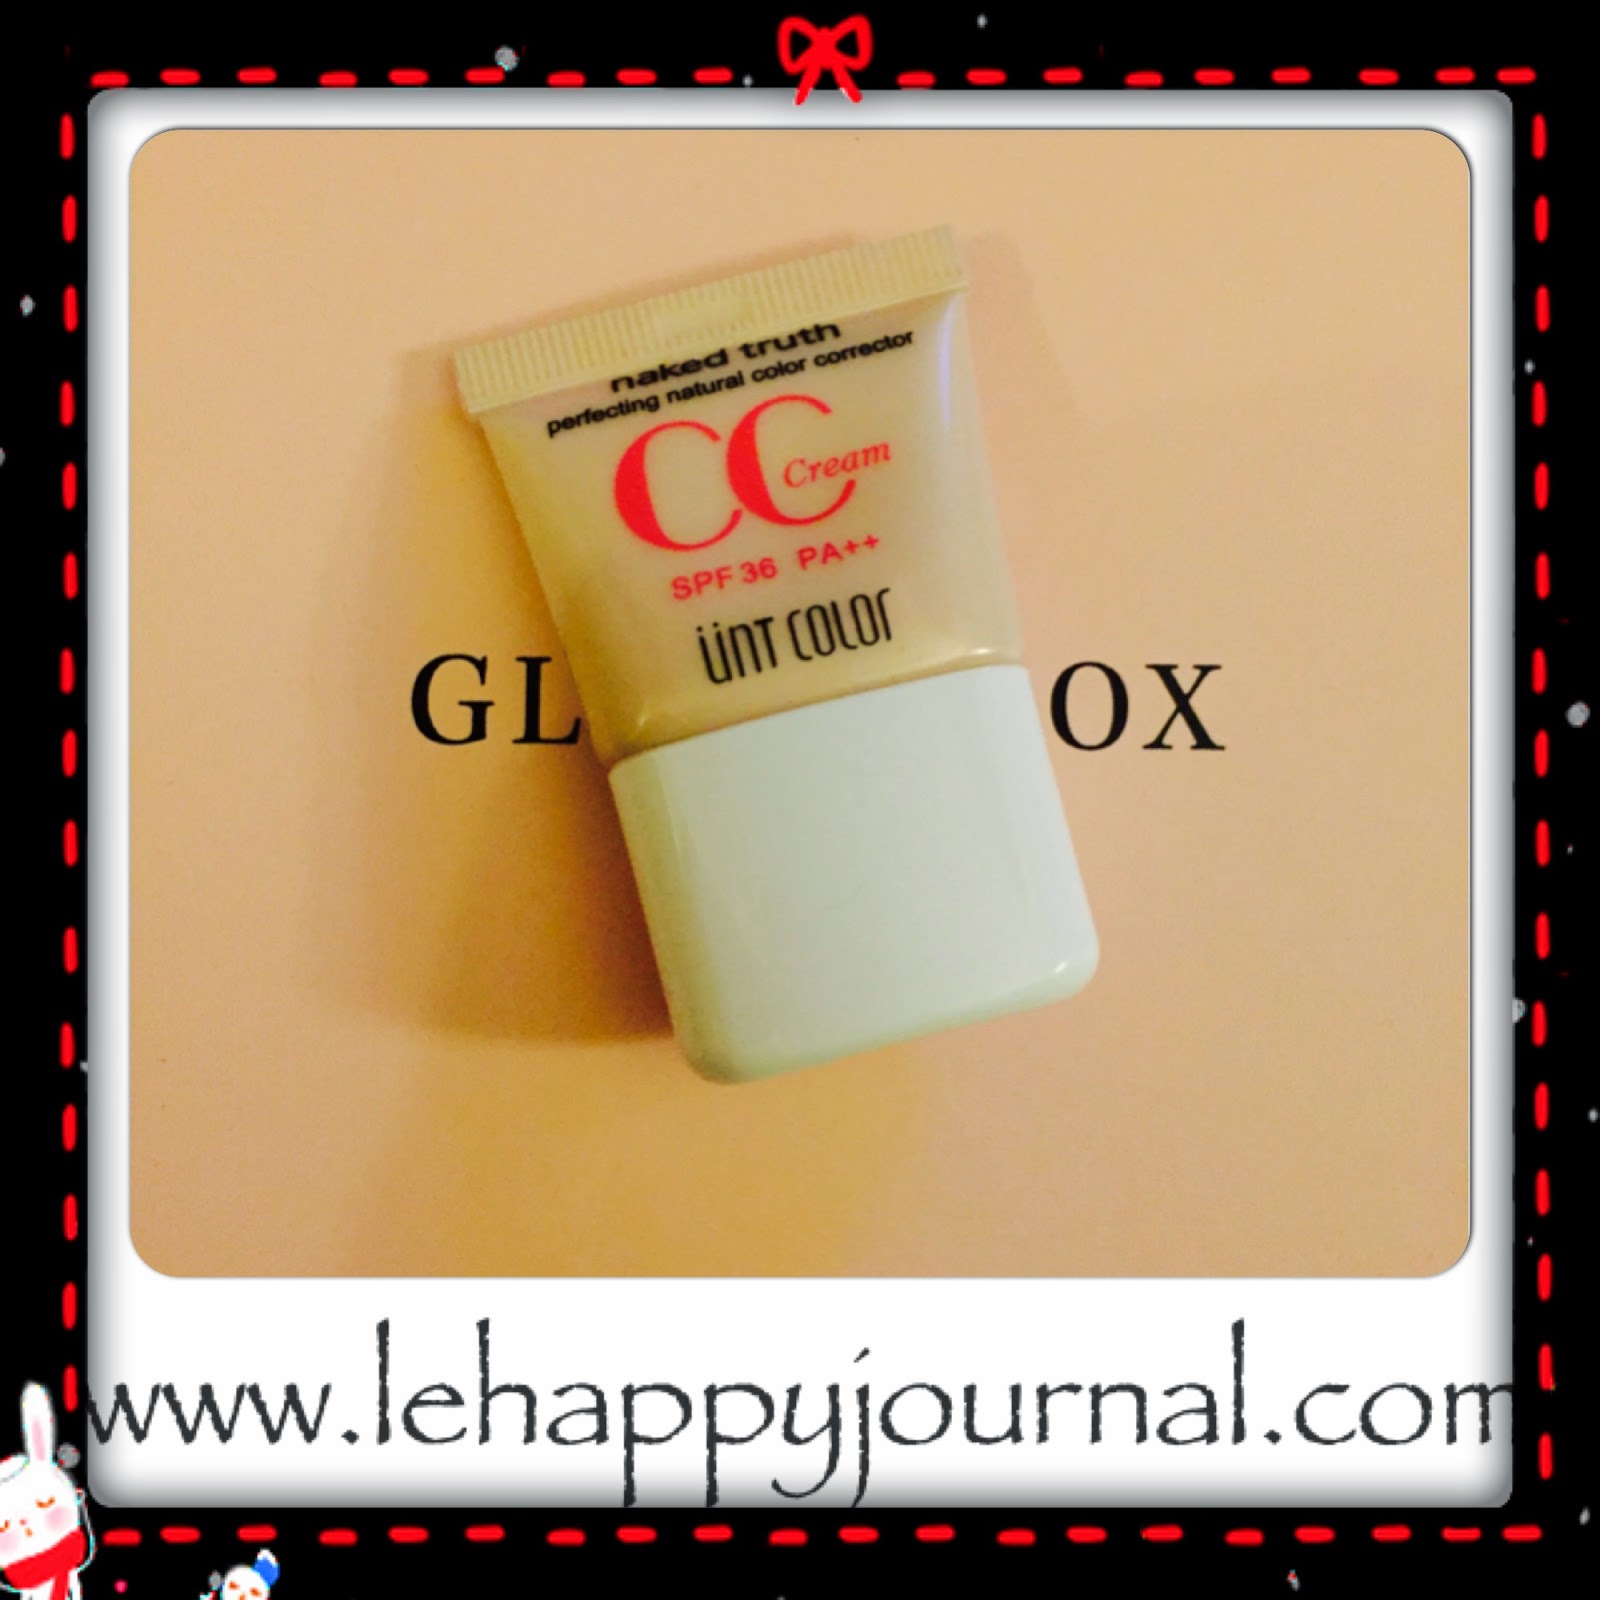 glossy box, janvier, 2015, beauté, unt color, cc crème, chi, baume, lollipops, better than sex, too faced, beurre onctueux, happy journal